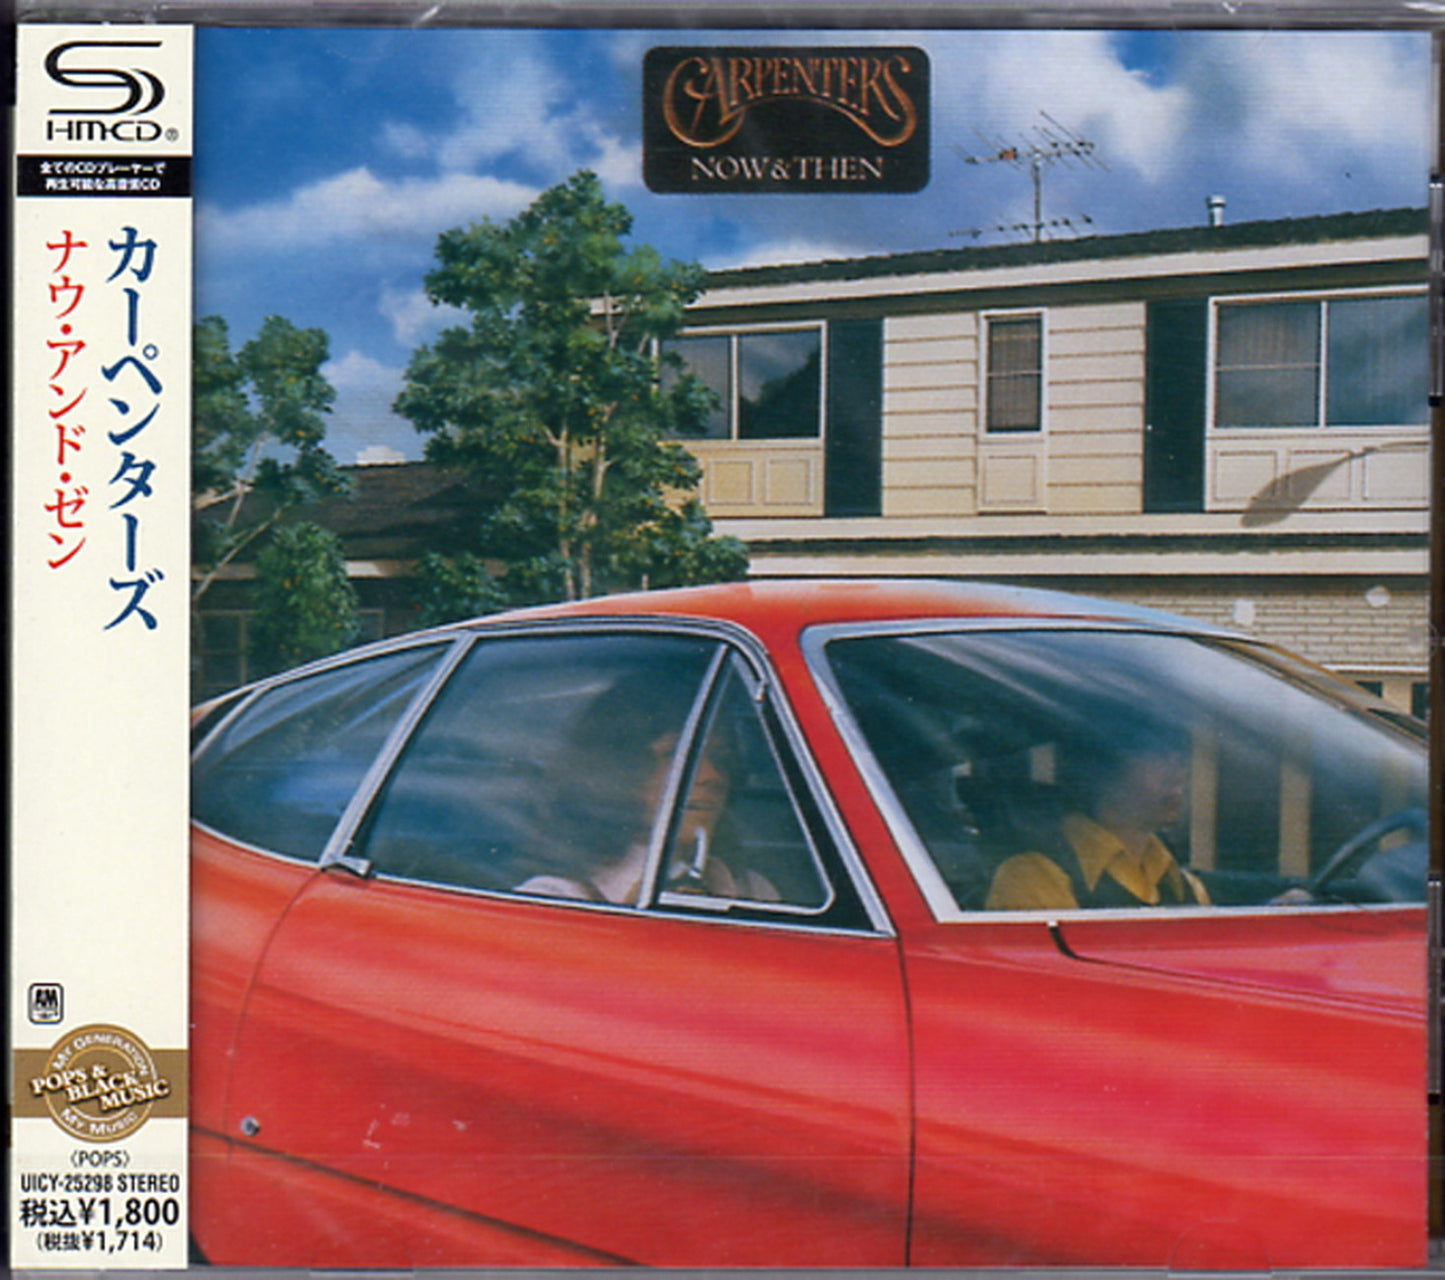 Carpenters - Now & Then - Japan  SHM-CD